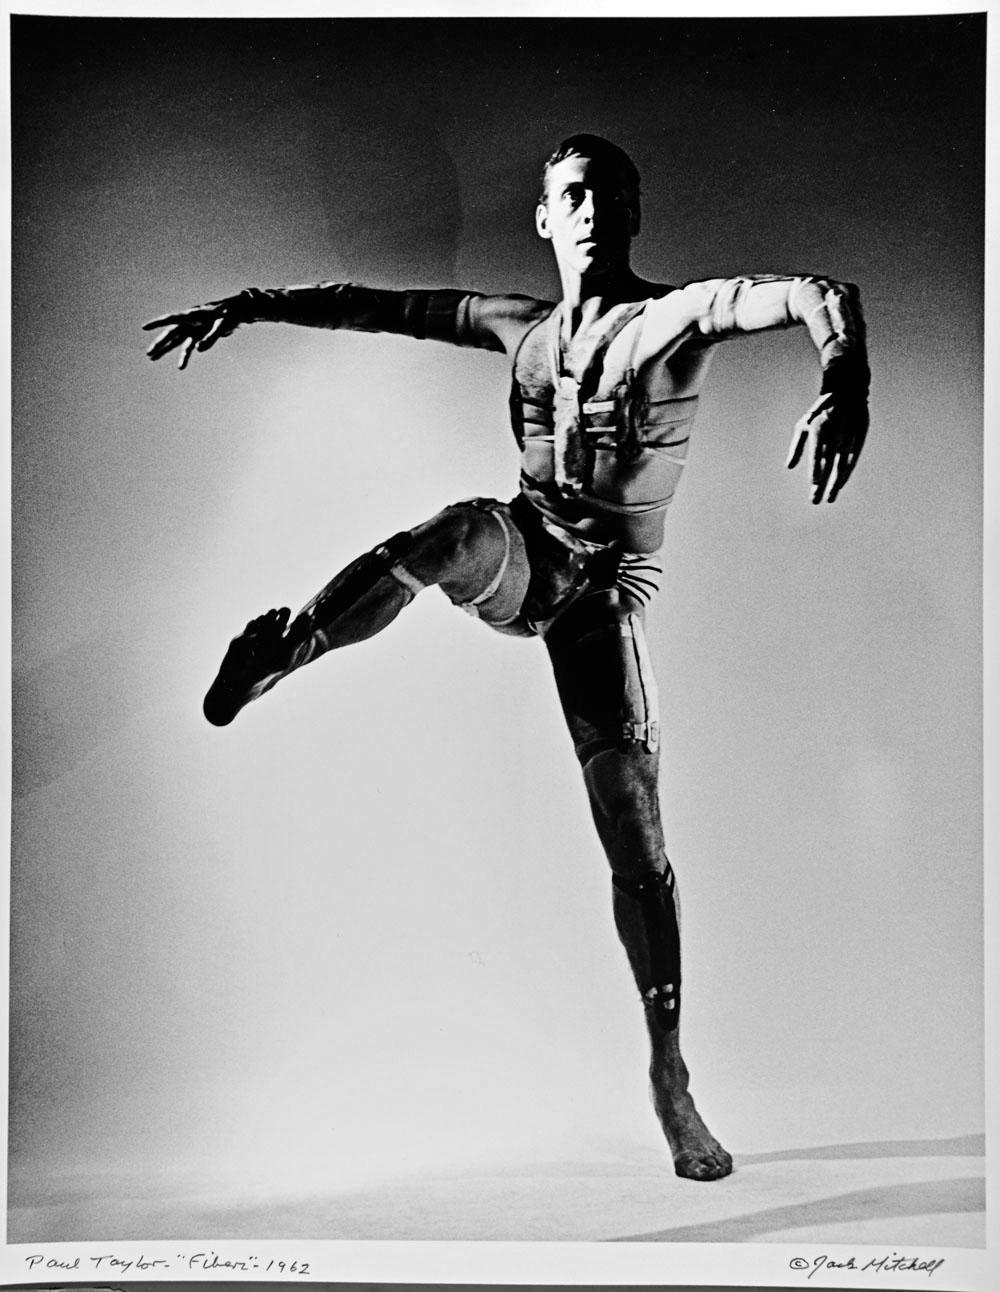 11 x 14" alte Silbergelatinefotografie von Paul Taylor bei der Aufführung von "Fibers" im Jahr 1962 in einem von Rouben Ter-Arutunian entworfenen Kostüm. Signiert von Jack Mitchell unten rechts und mit Bleistift auf der Rückseite. Kommt direkt aus